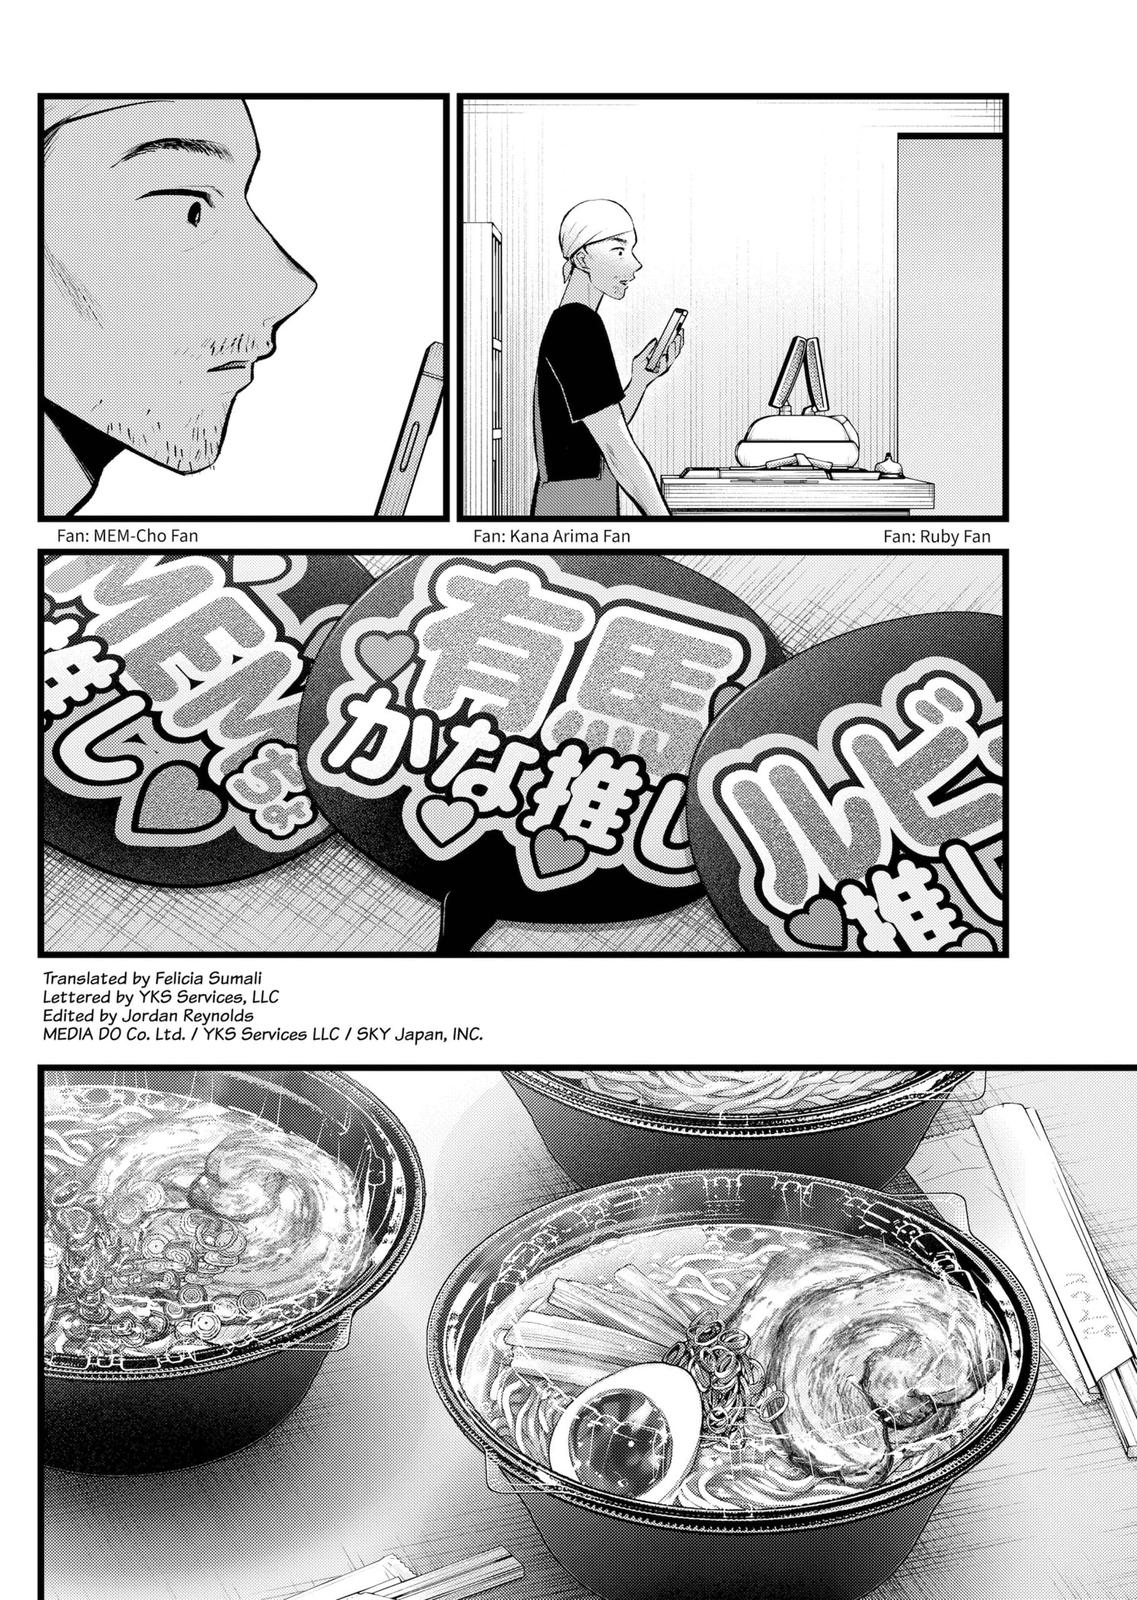 Oshi no ko, Chapter 117 - Oshi no ko Manga Online